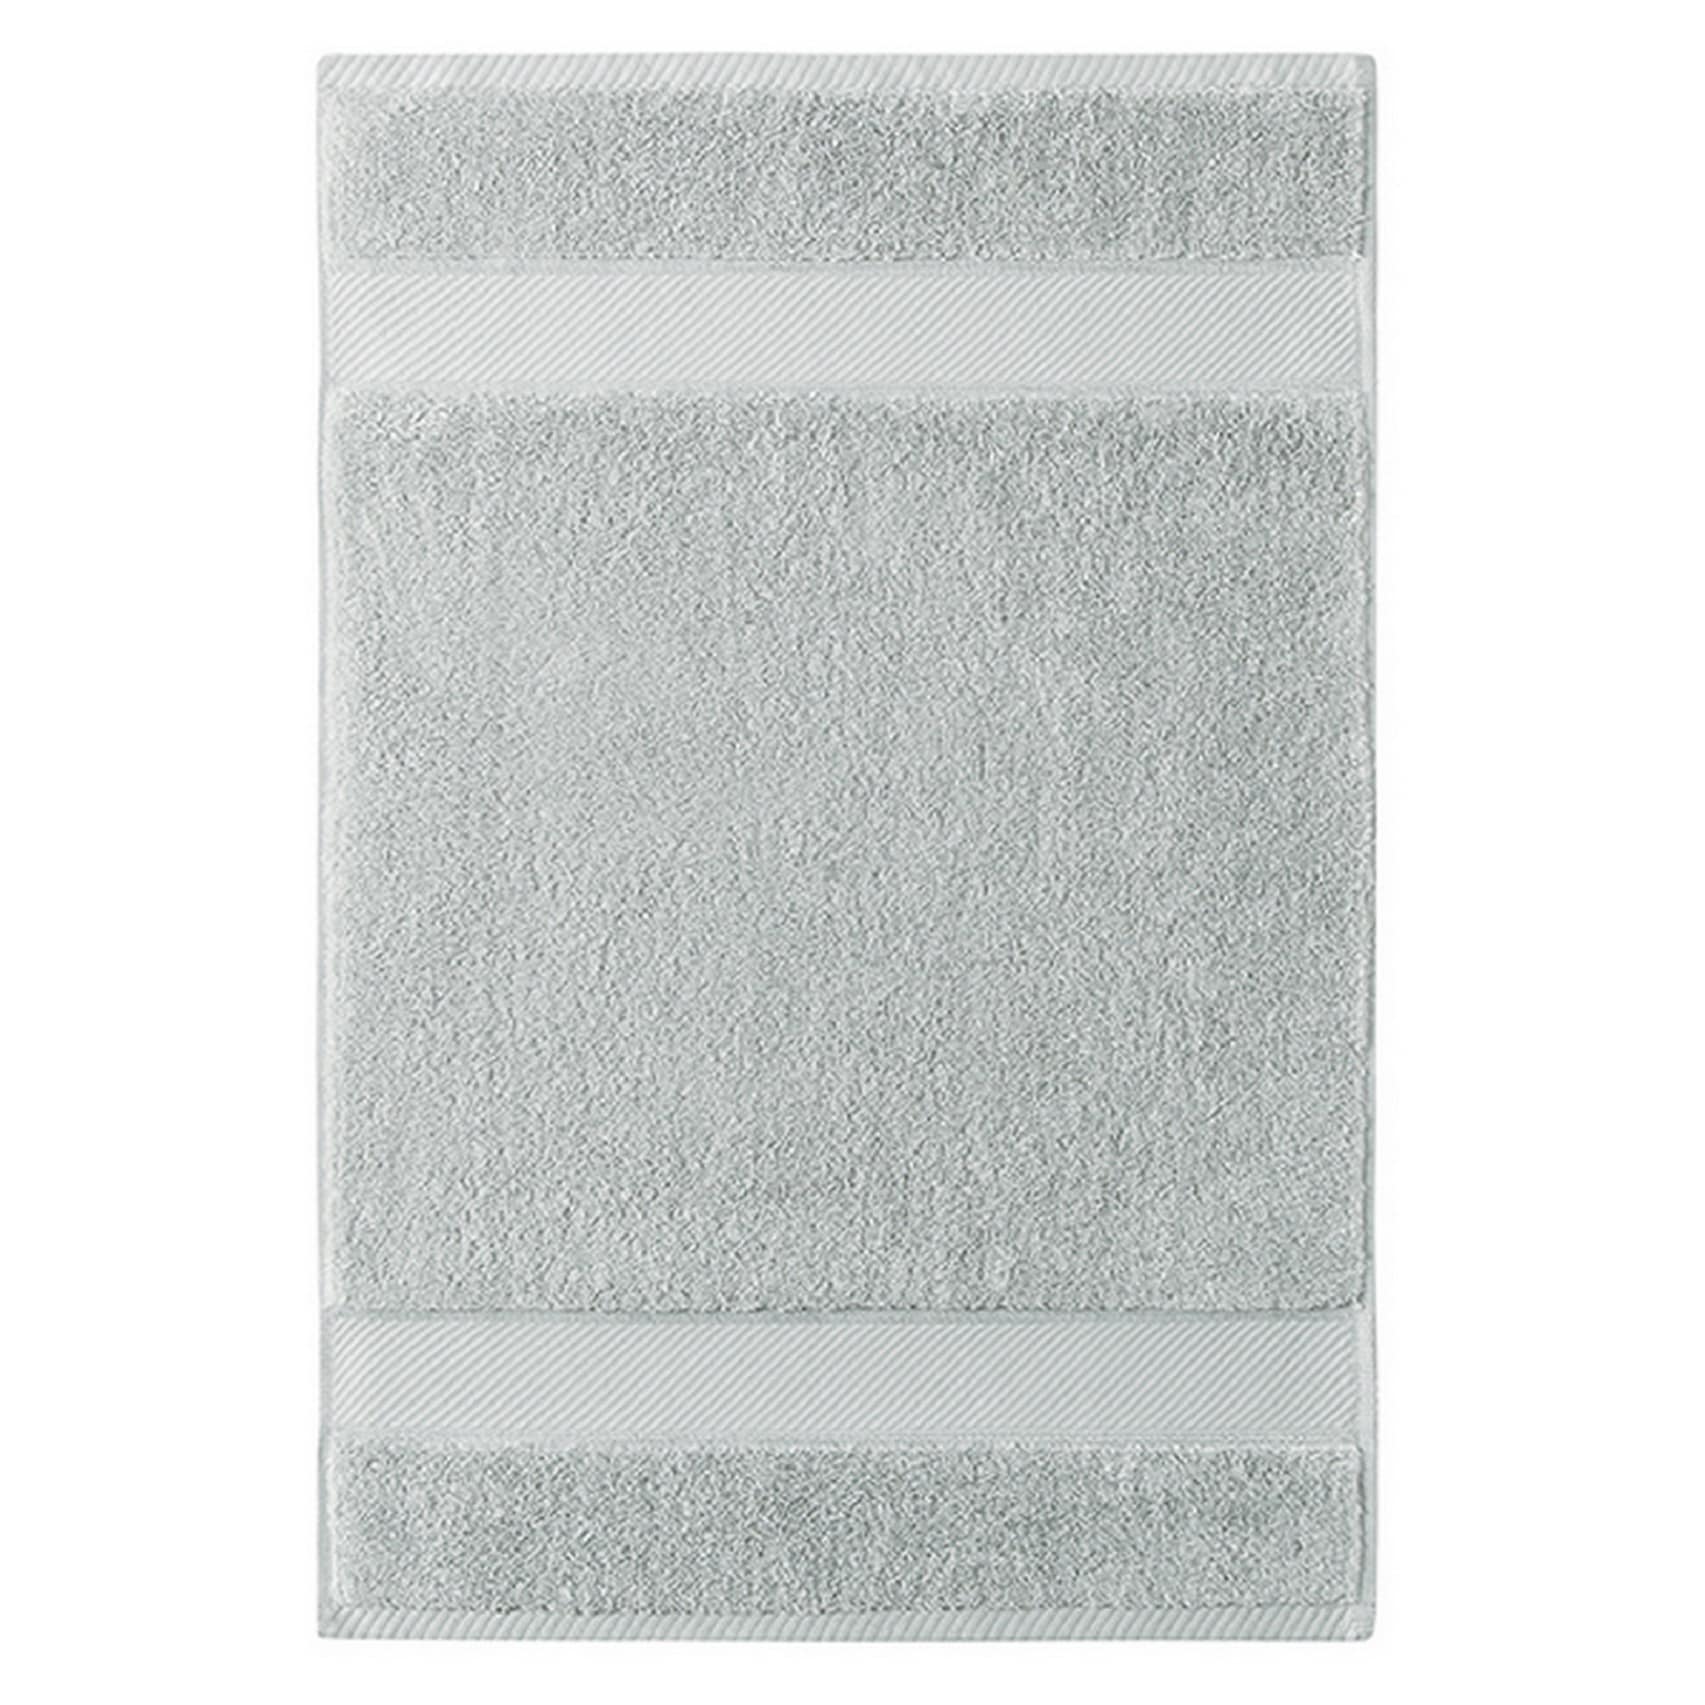 Charisma Classic 6-Piece Towel Set - ShopStyle